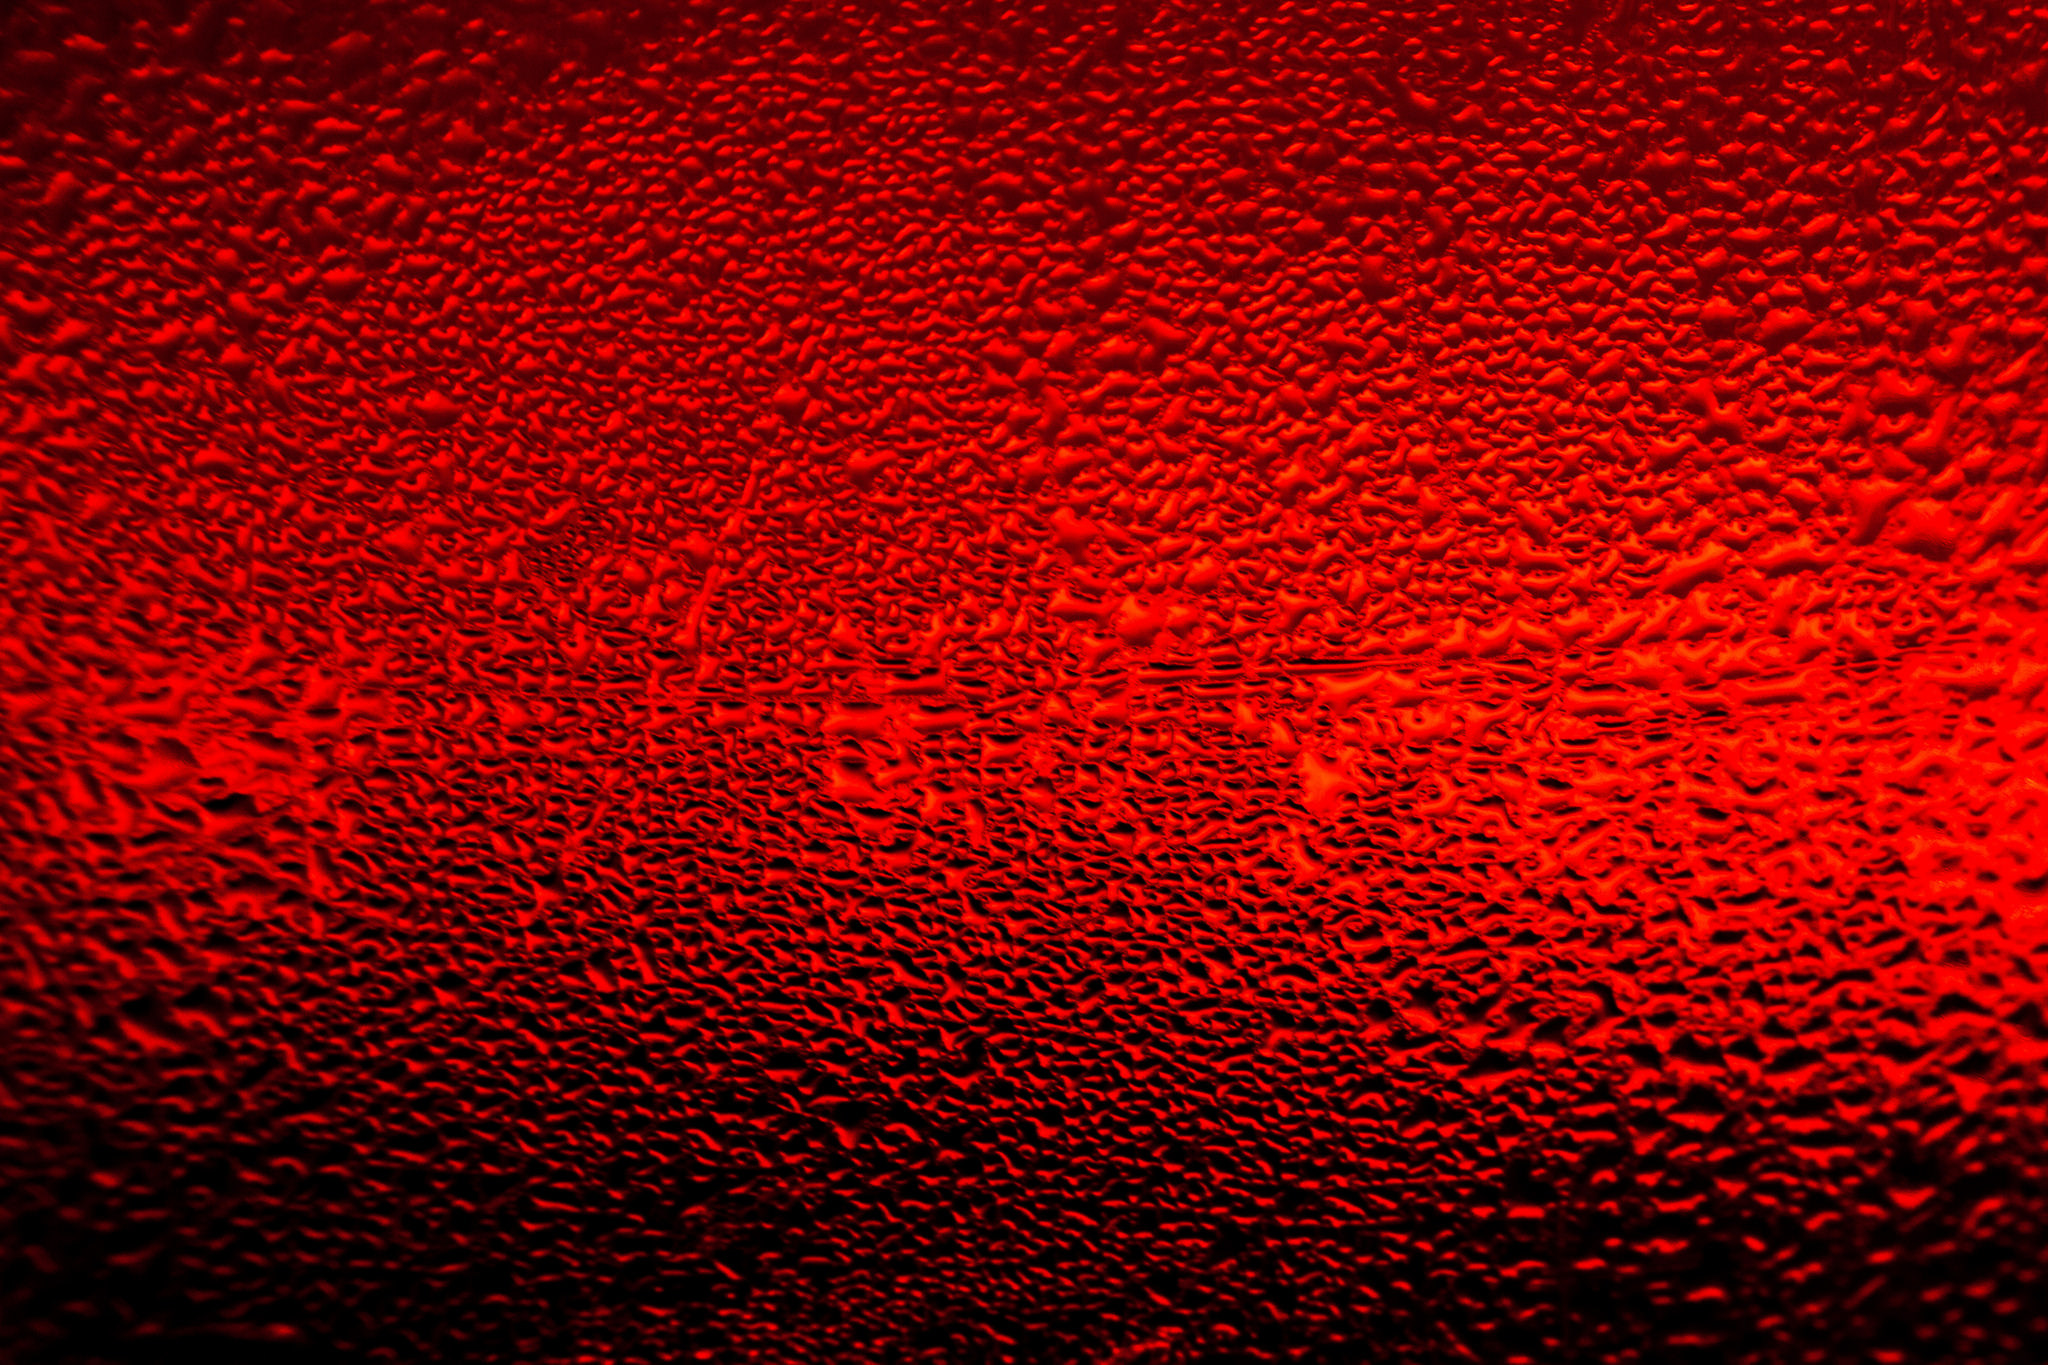 Картинка обои красная. Красная текстура. Текстурный фон. Красный металл текстура. Сочный красный цвет.